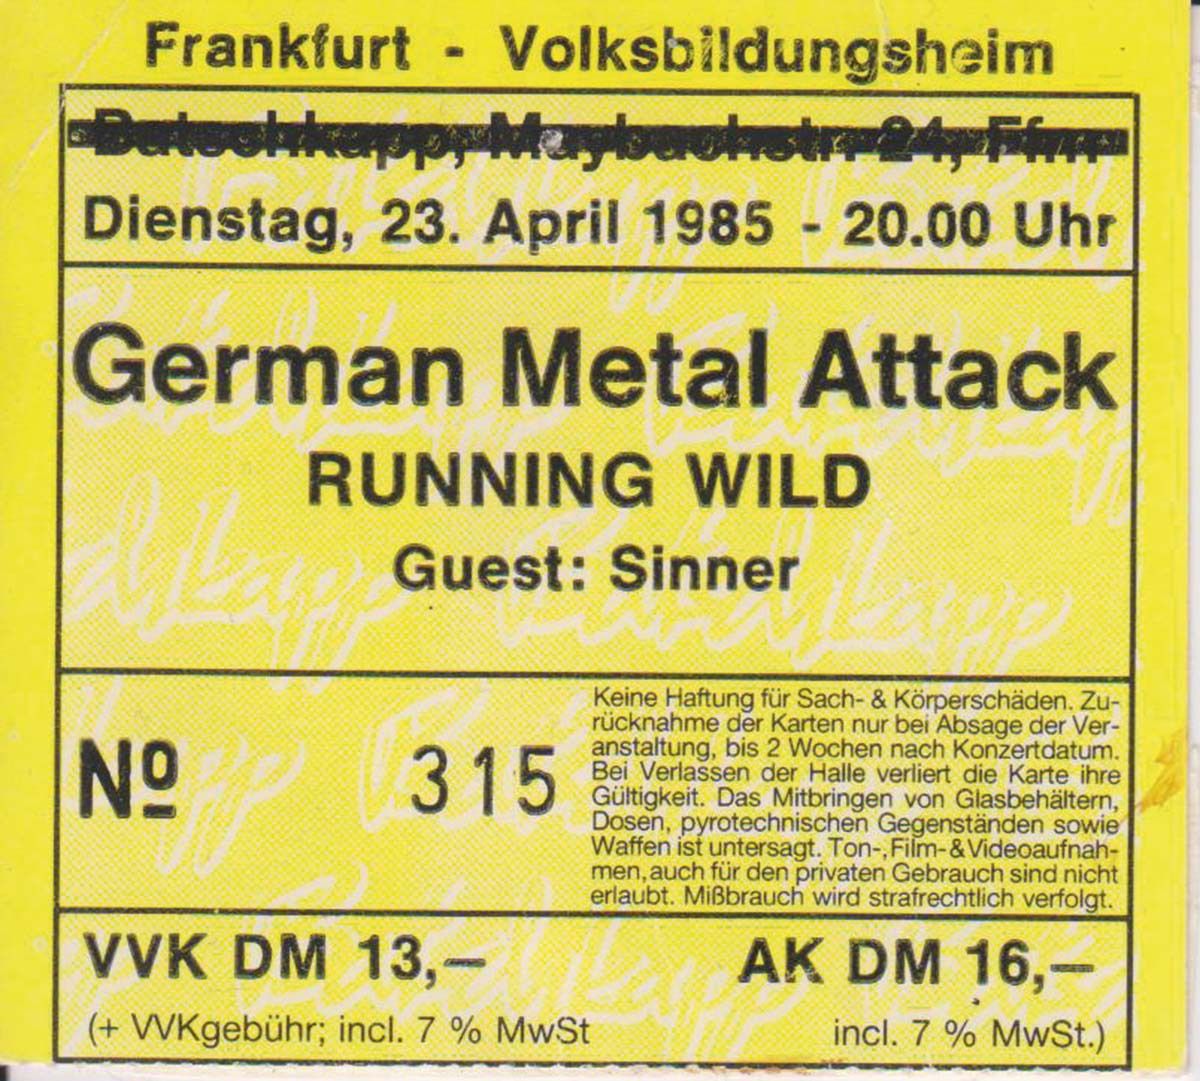 THOSE WERE THE DAYS: Frankfurt, Volksbildungsheim, 23.04.1985